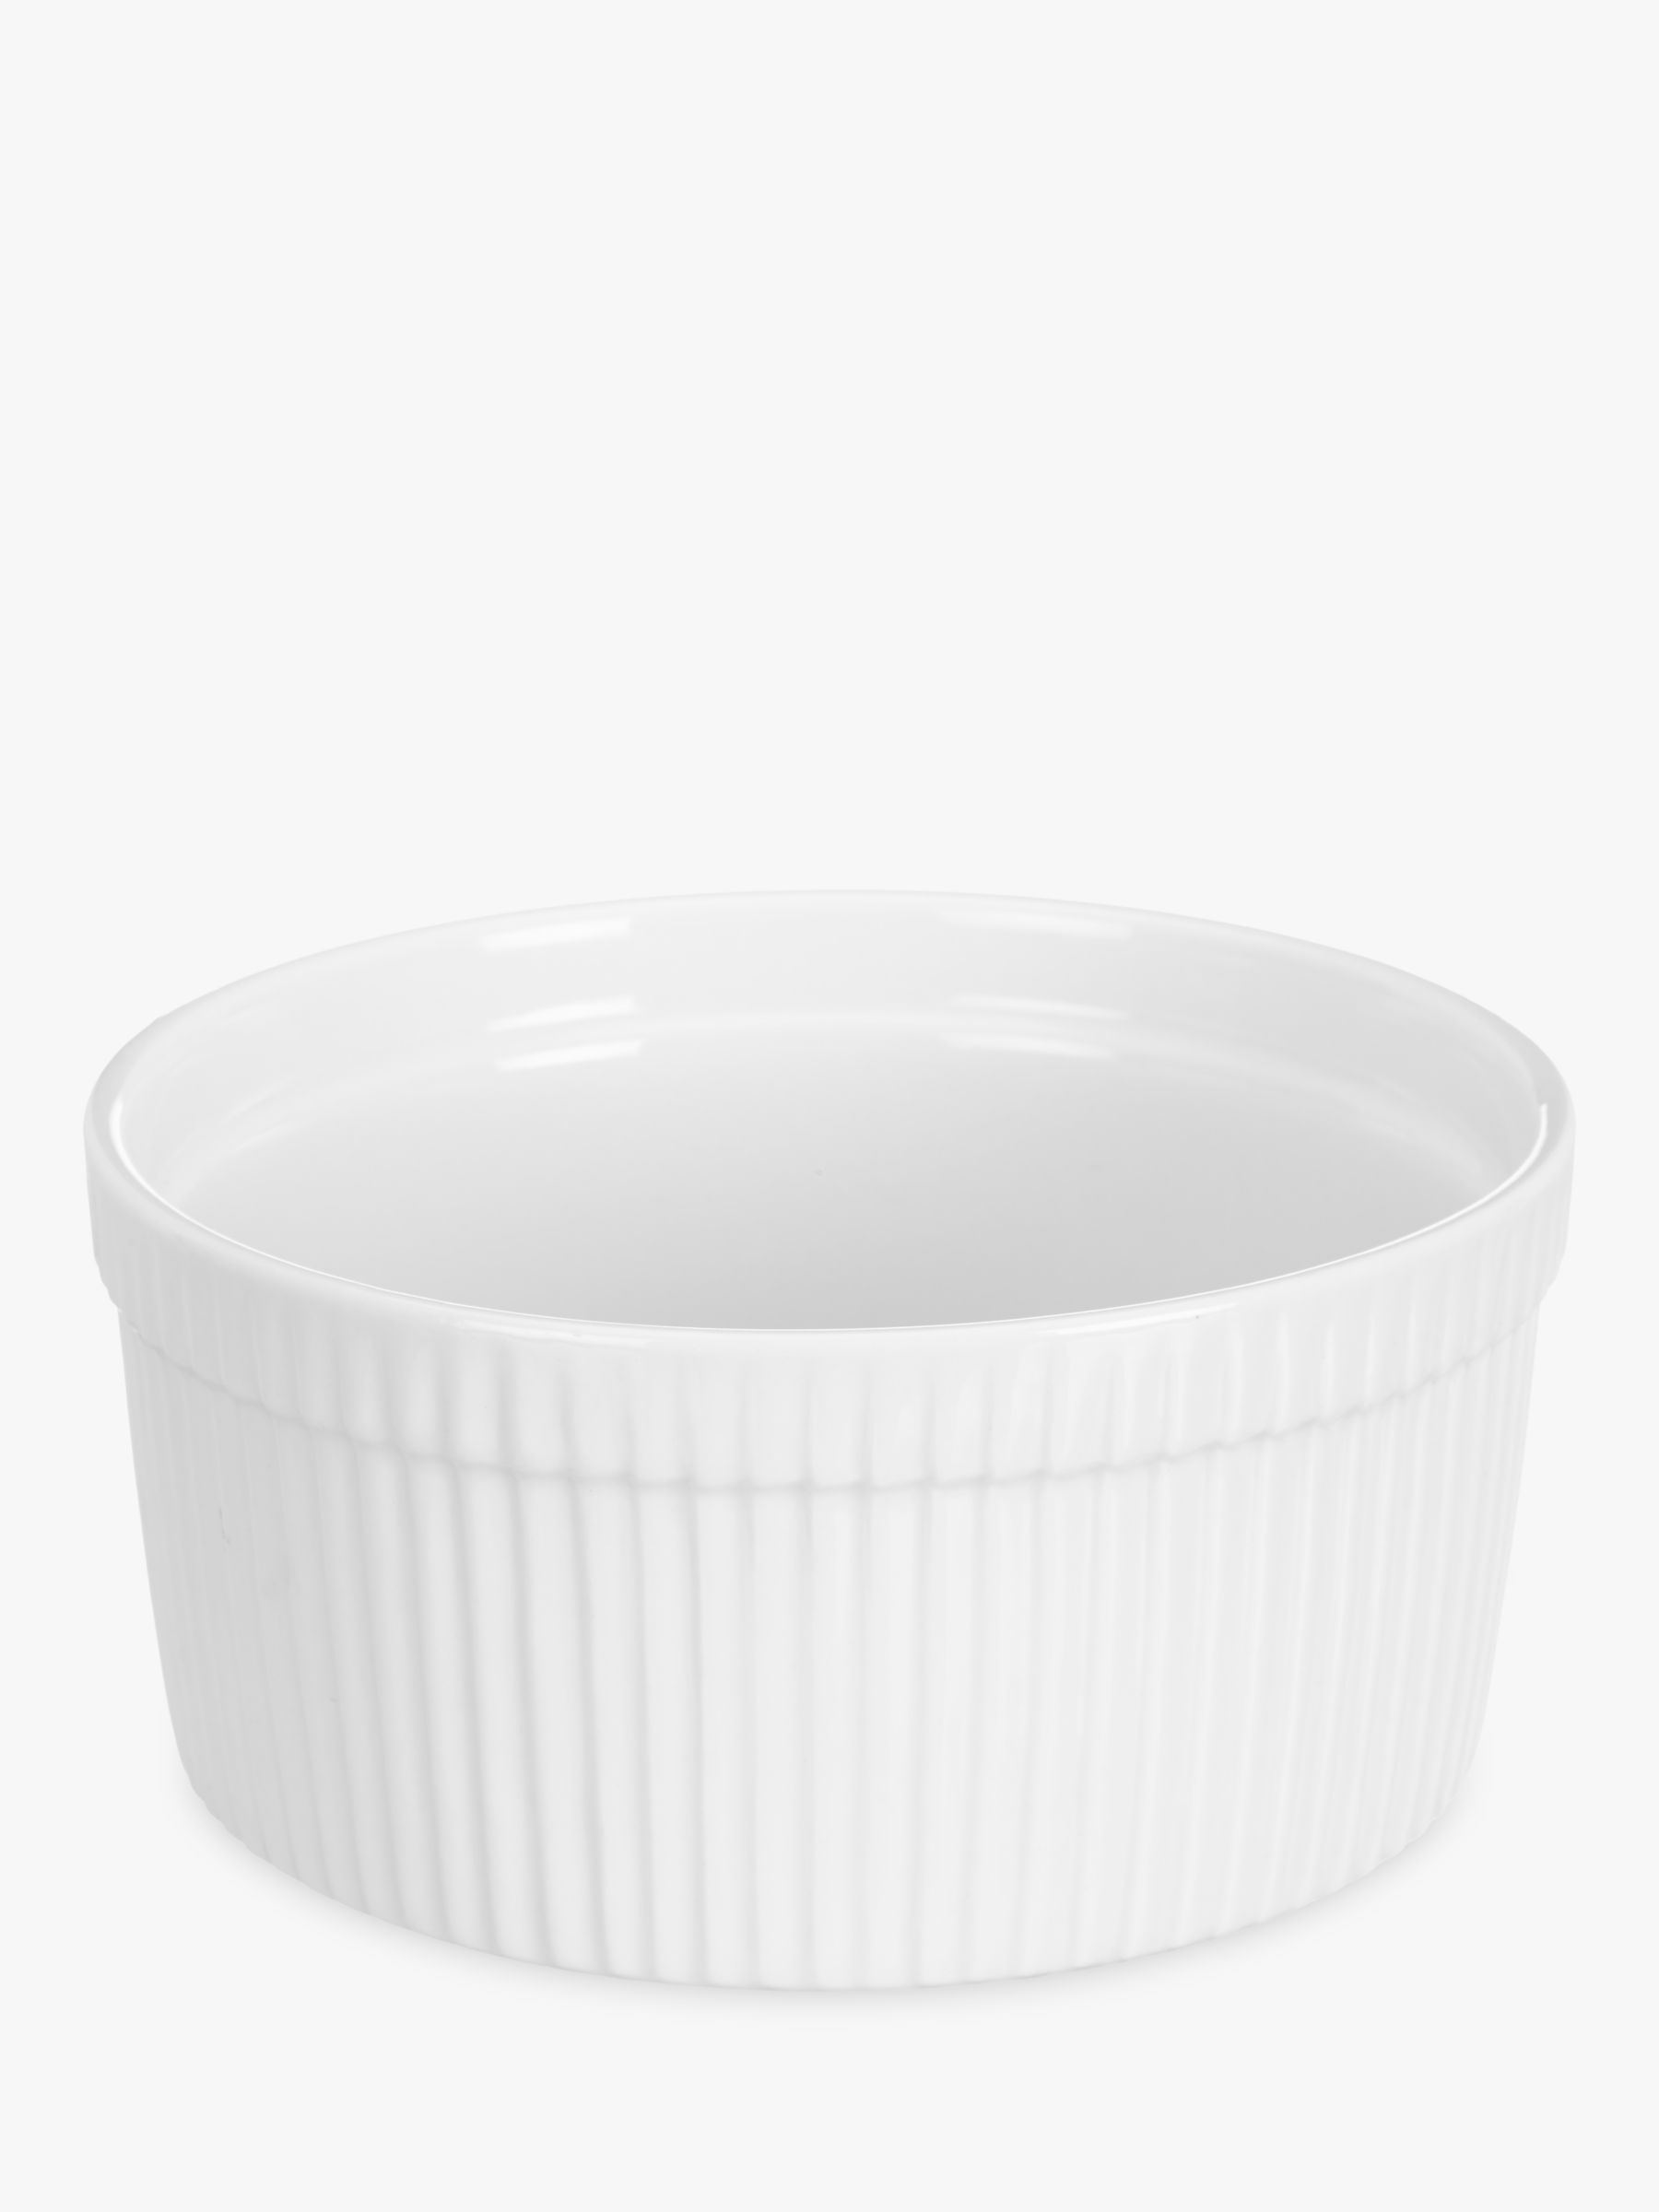 John Lewis & Partners Porcelain Round Soufflé Oven Dish, 17.5cm, White